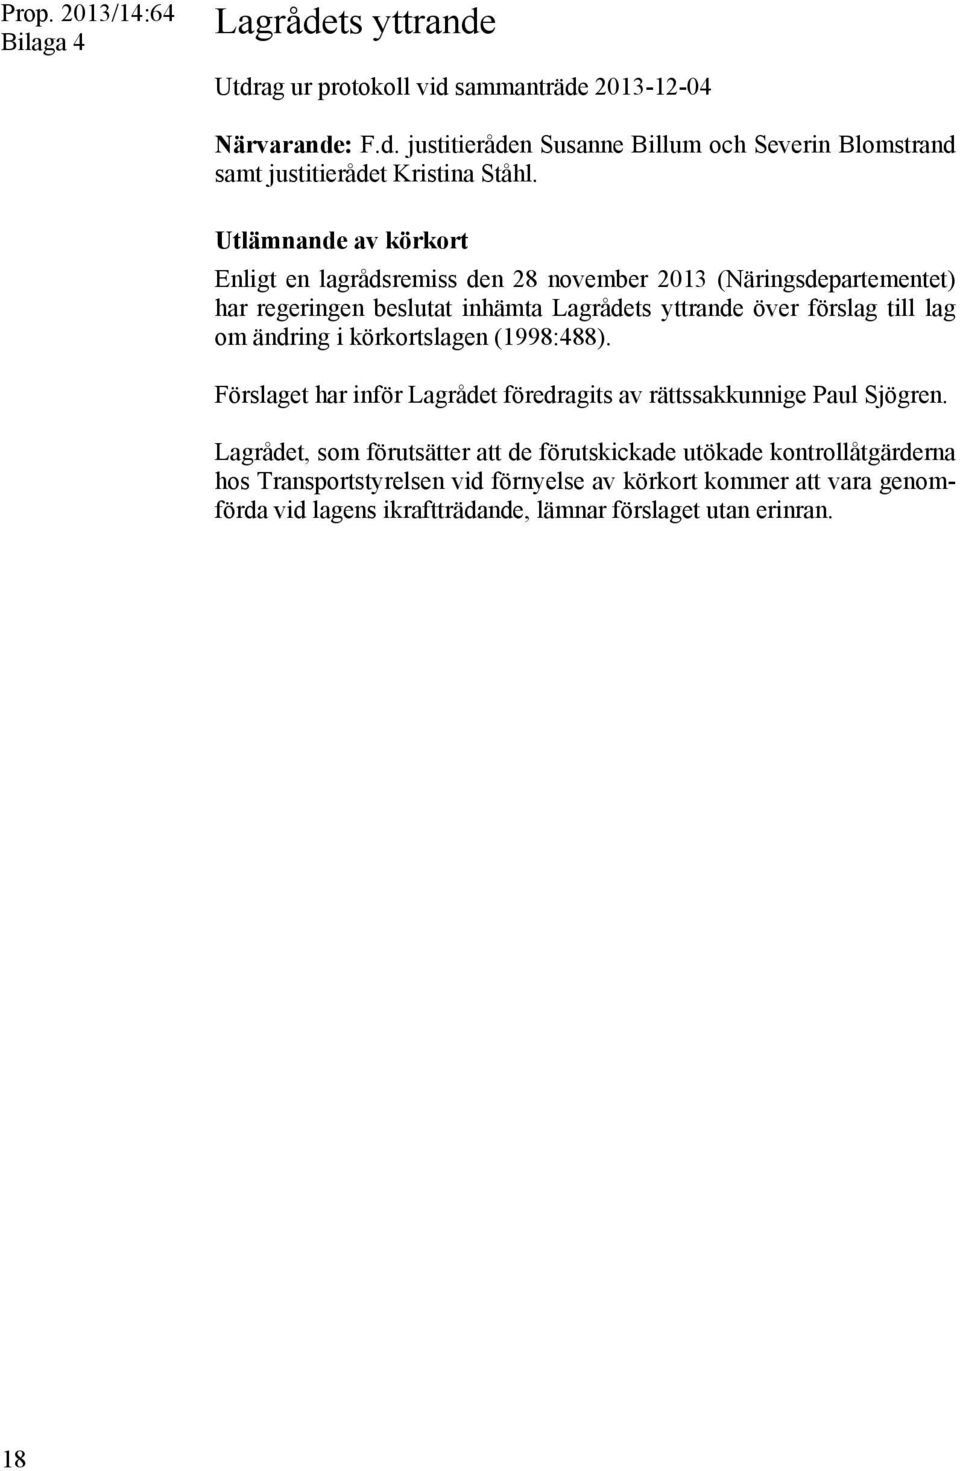 ändring i körkortslagen (1998:488). Förslaget har inför Lagrådet föredragits av rättssakkunnige Paul Sjögren.